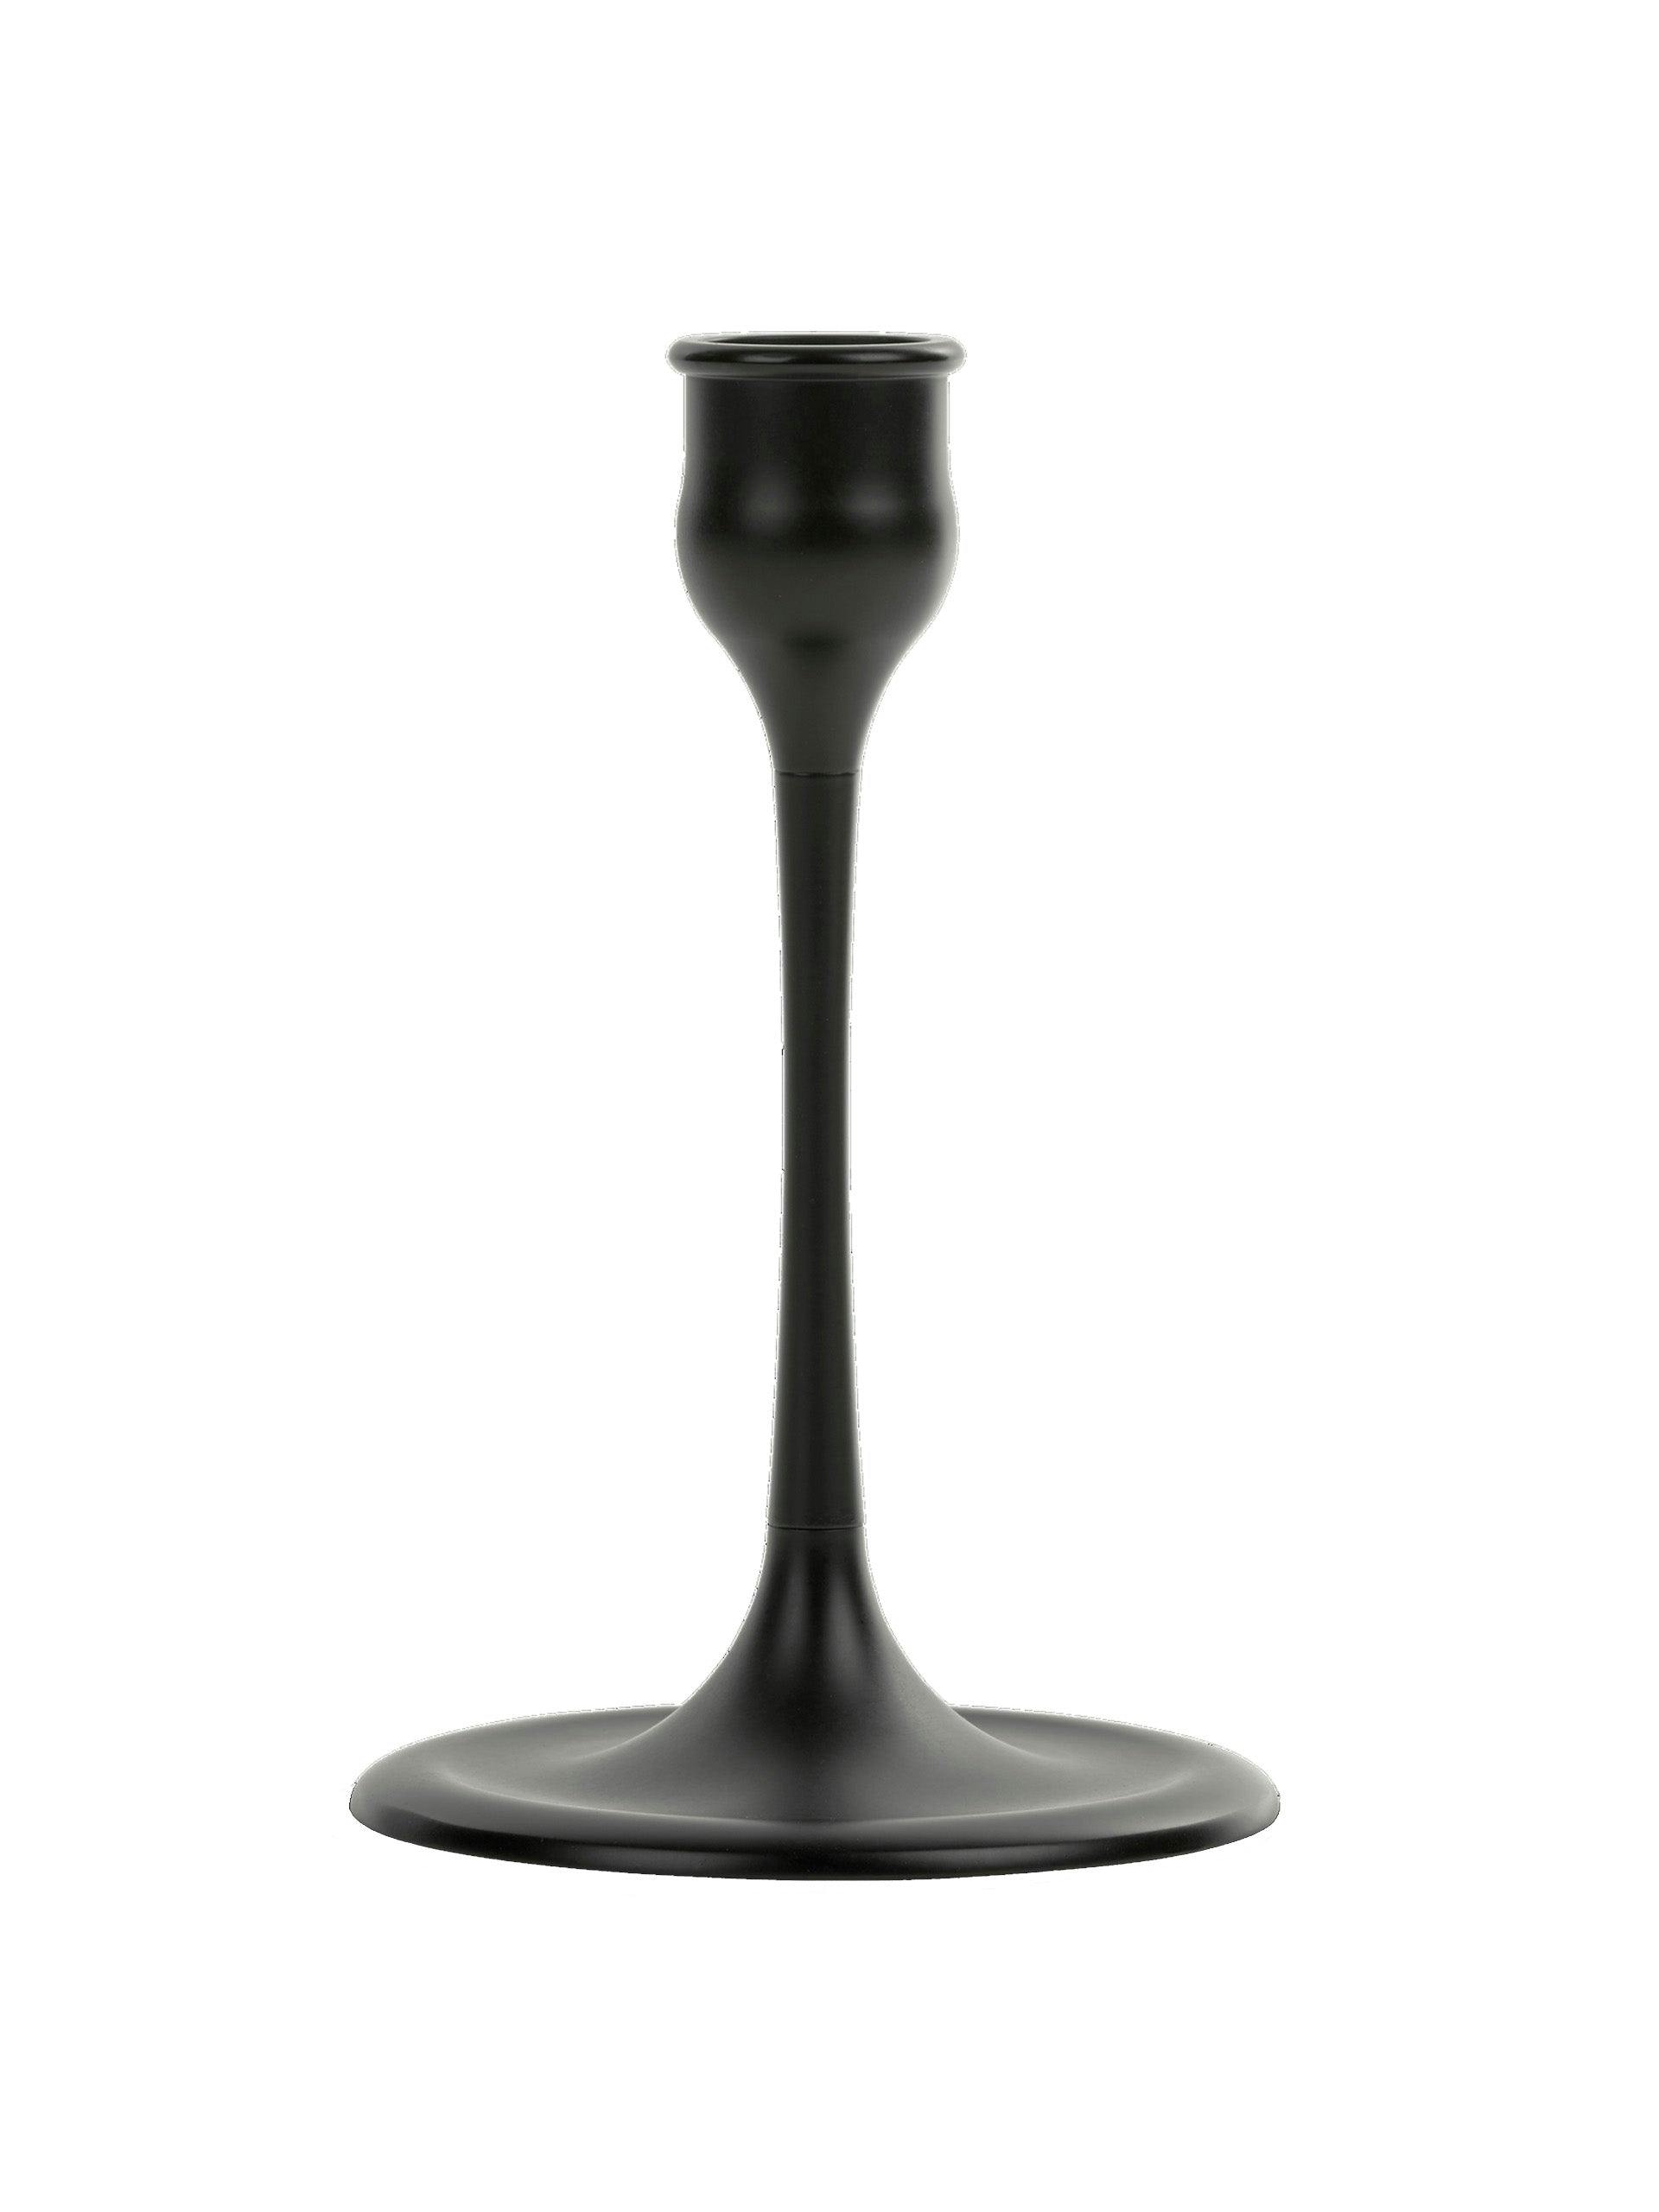 Large Heddon candlestick in Warm Black